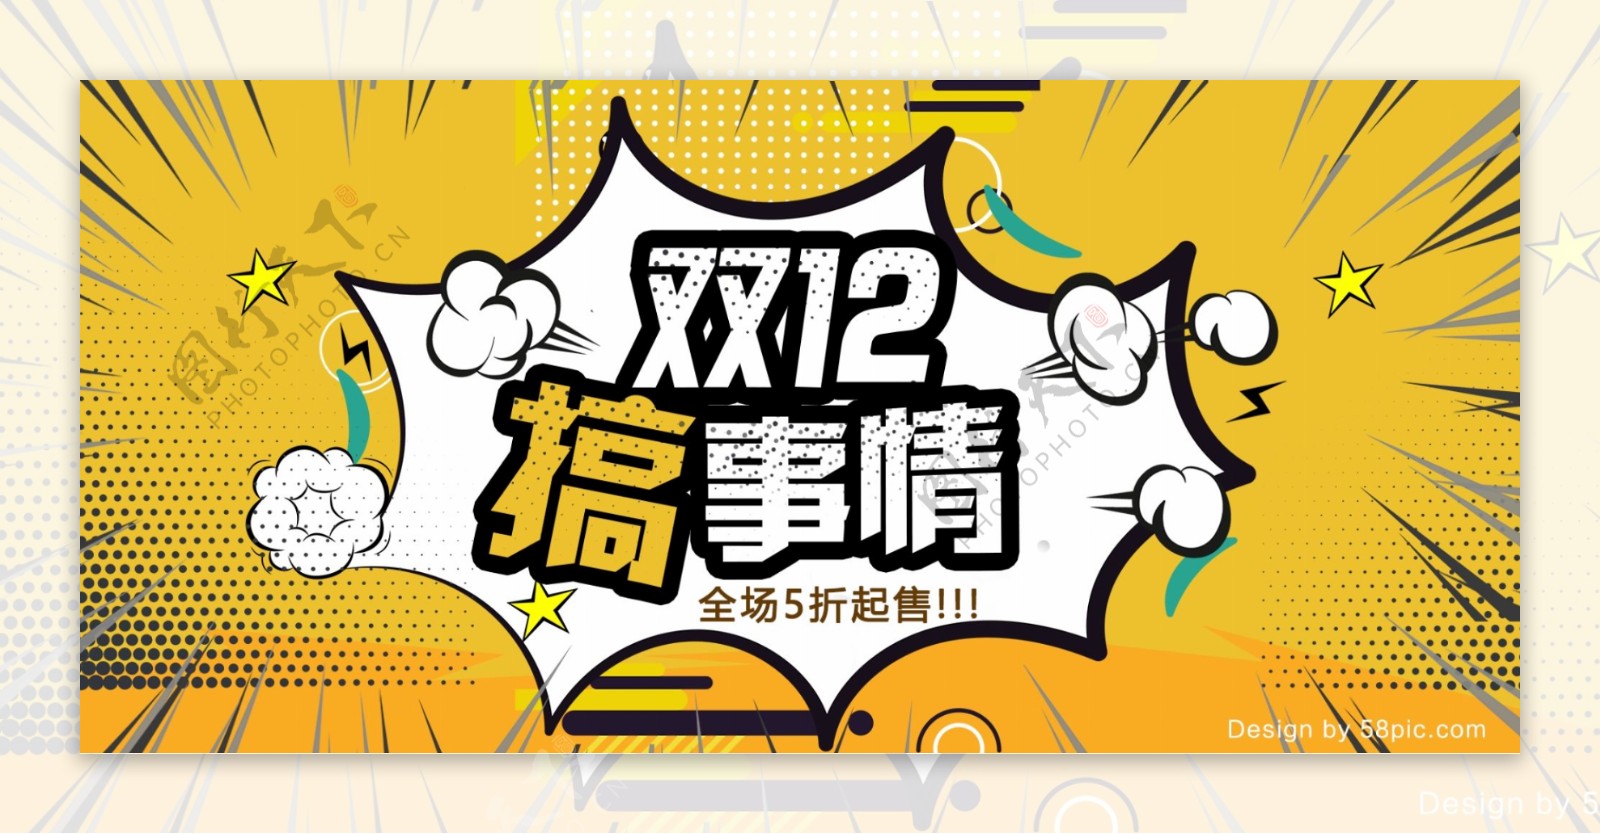 双12黄色波普风电商卡通促销banner